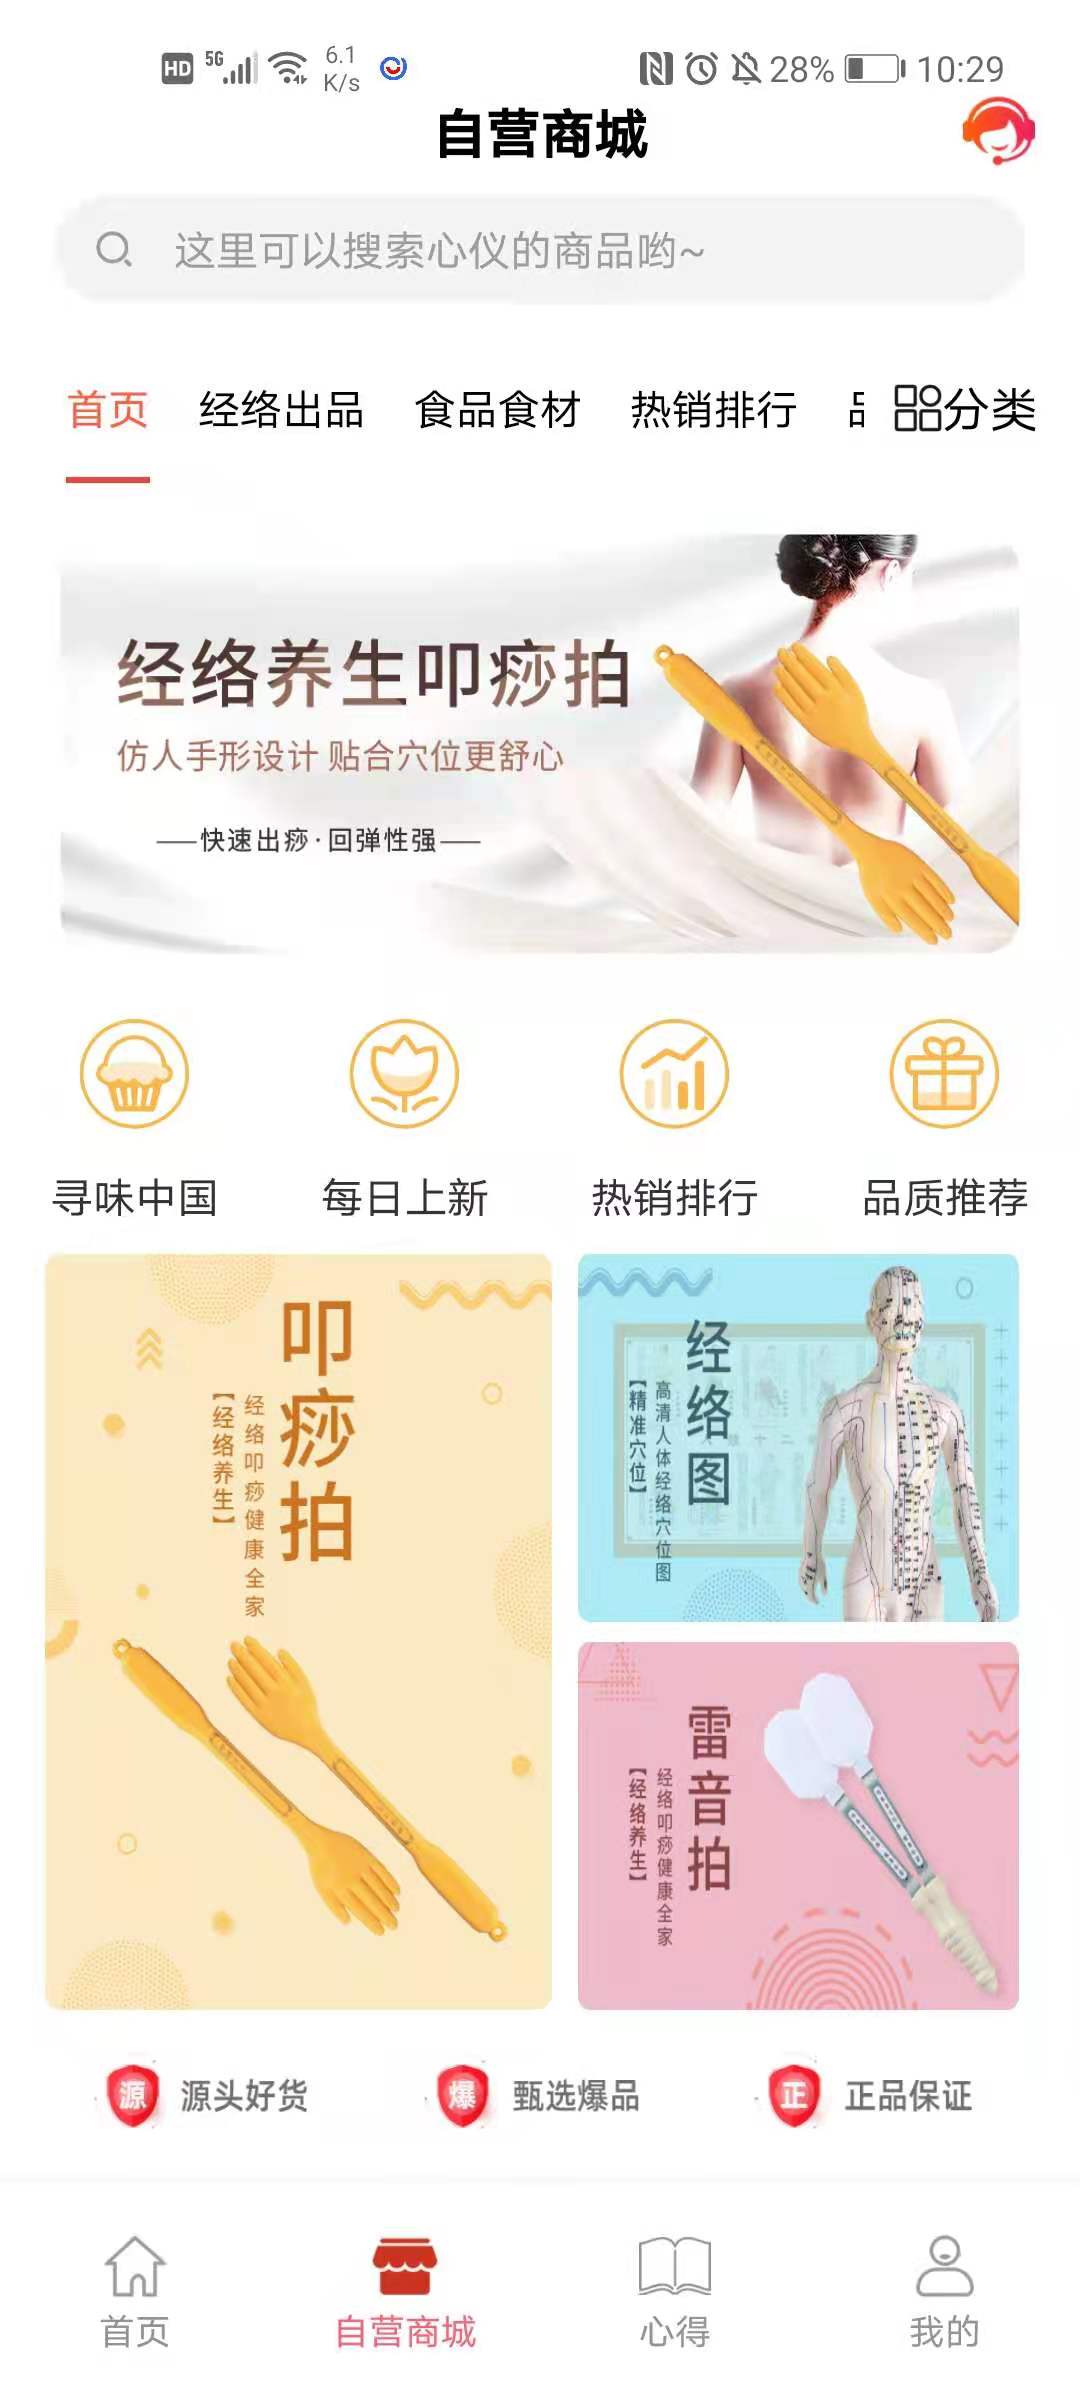 健康帮驿站App最新版截图2: